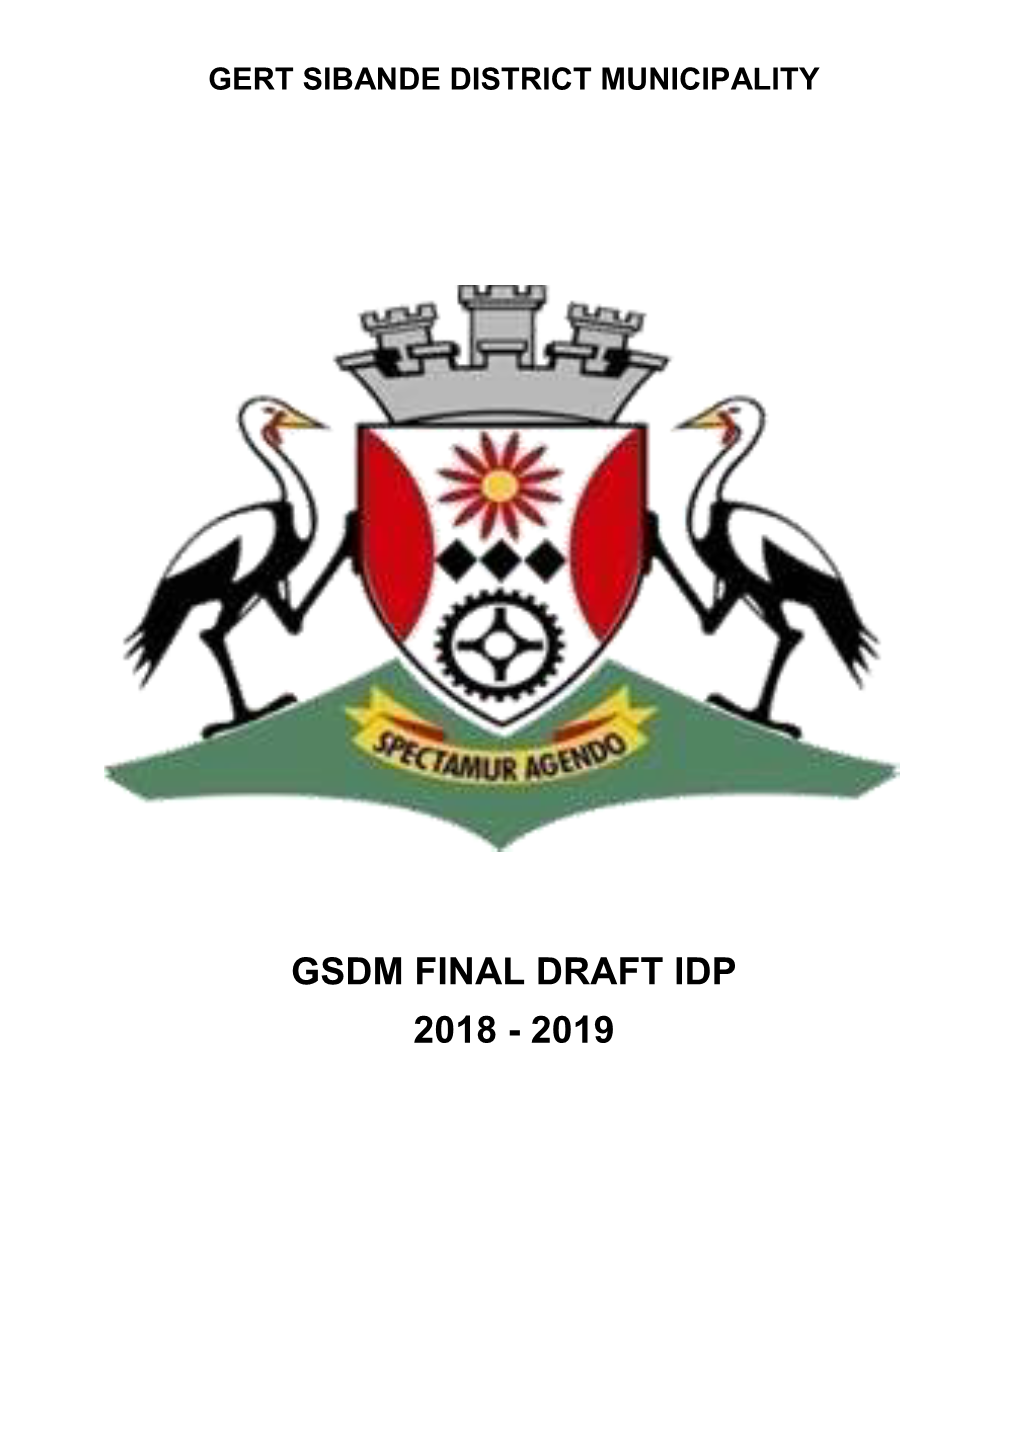 Gsdm Final Draft Idp 2018 - 2019